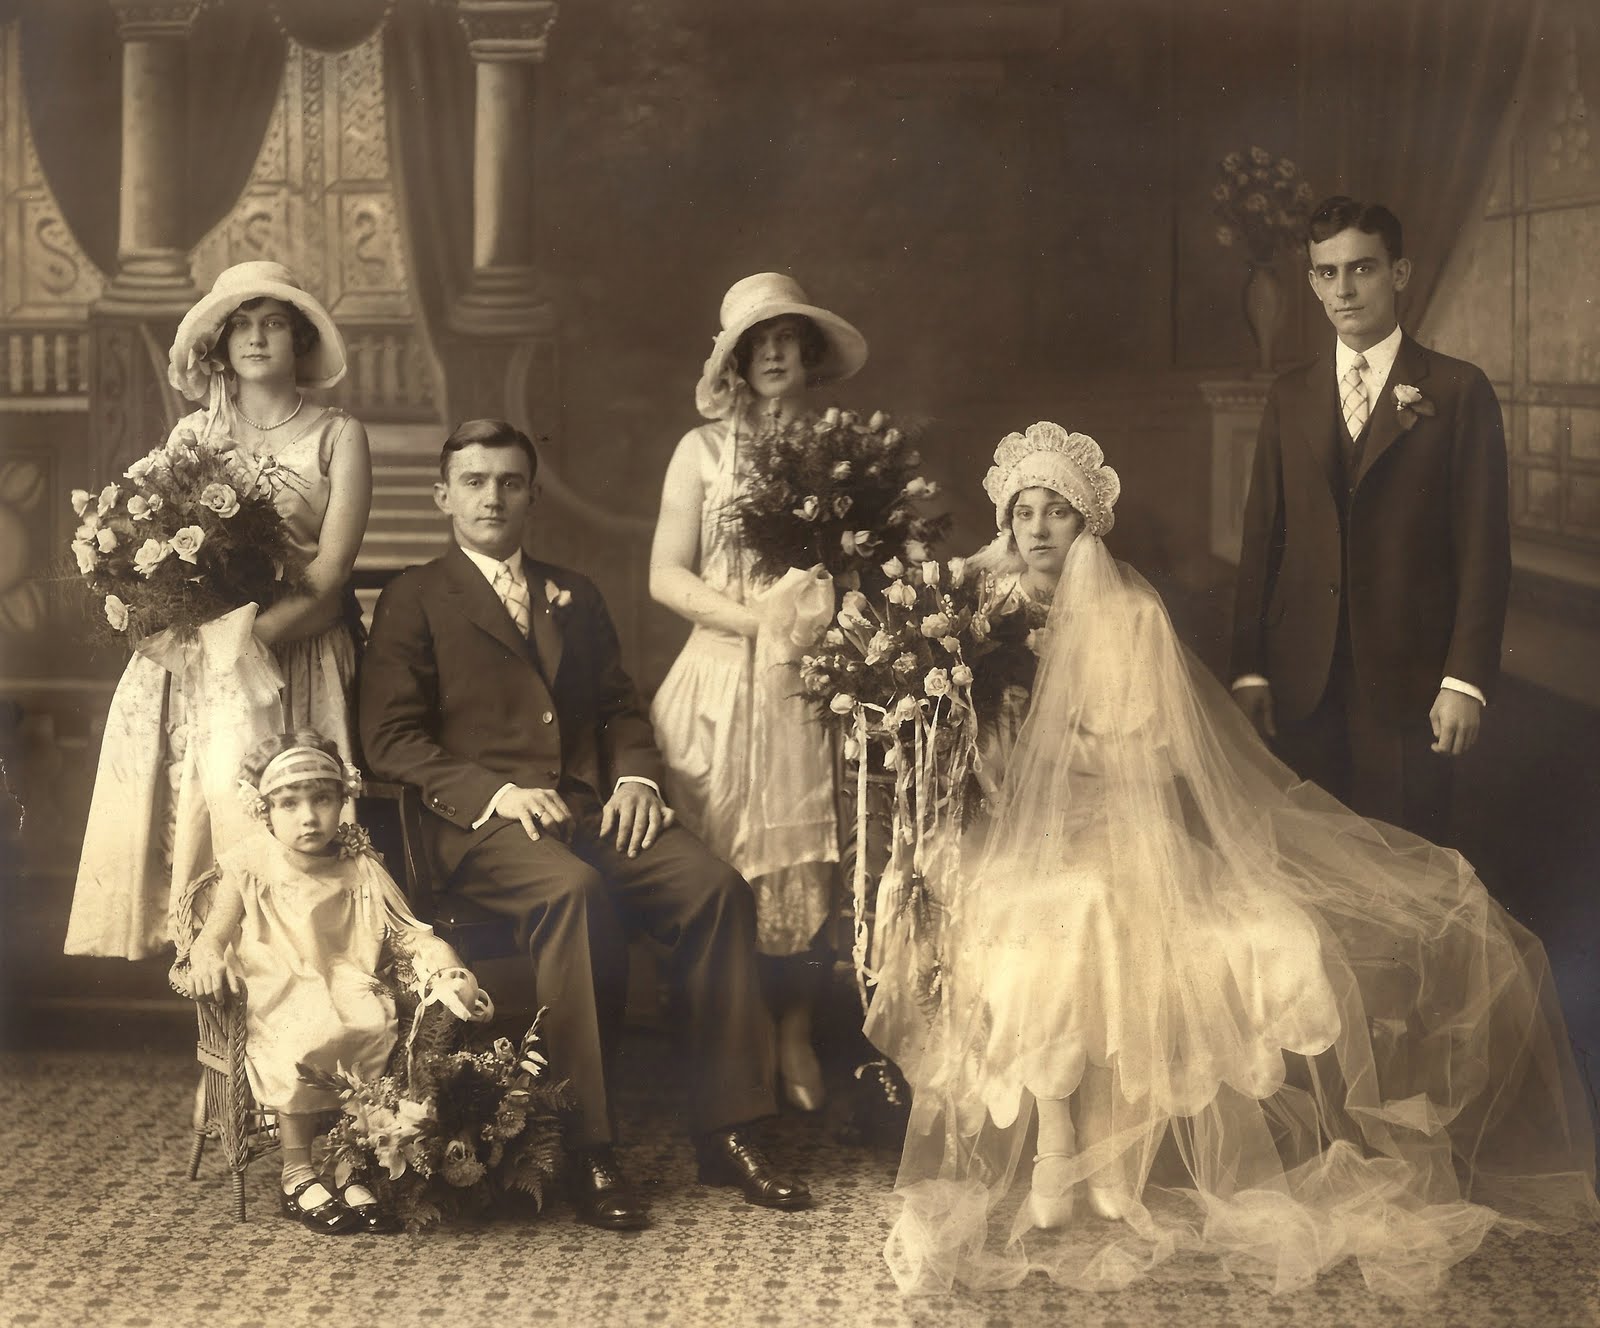 Традиции и обряды славянской свадьбы. как организовать торжество в старорусском стиле в наши дни?